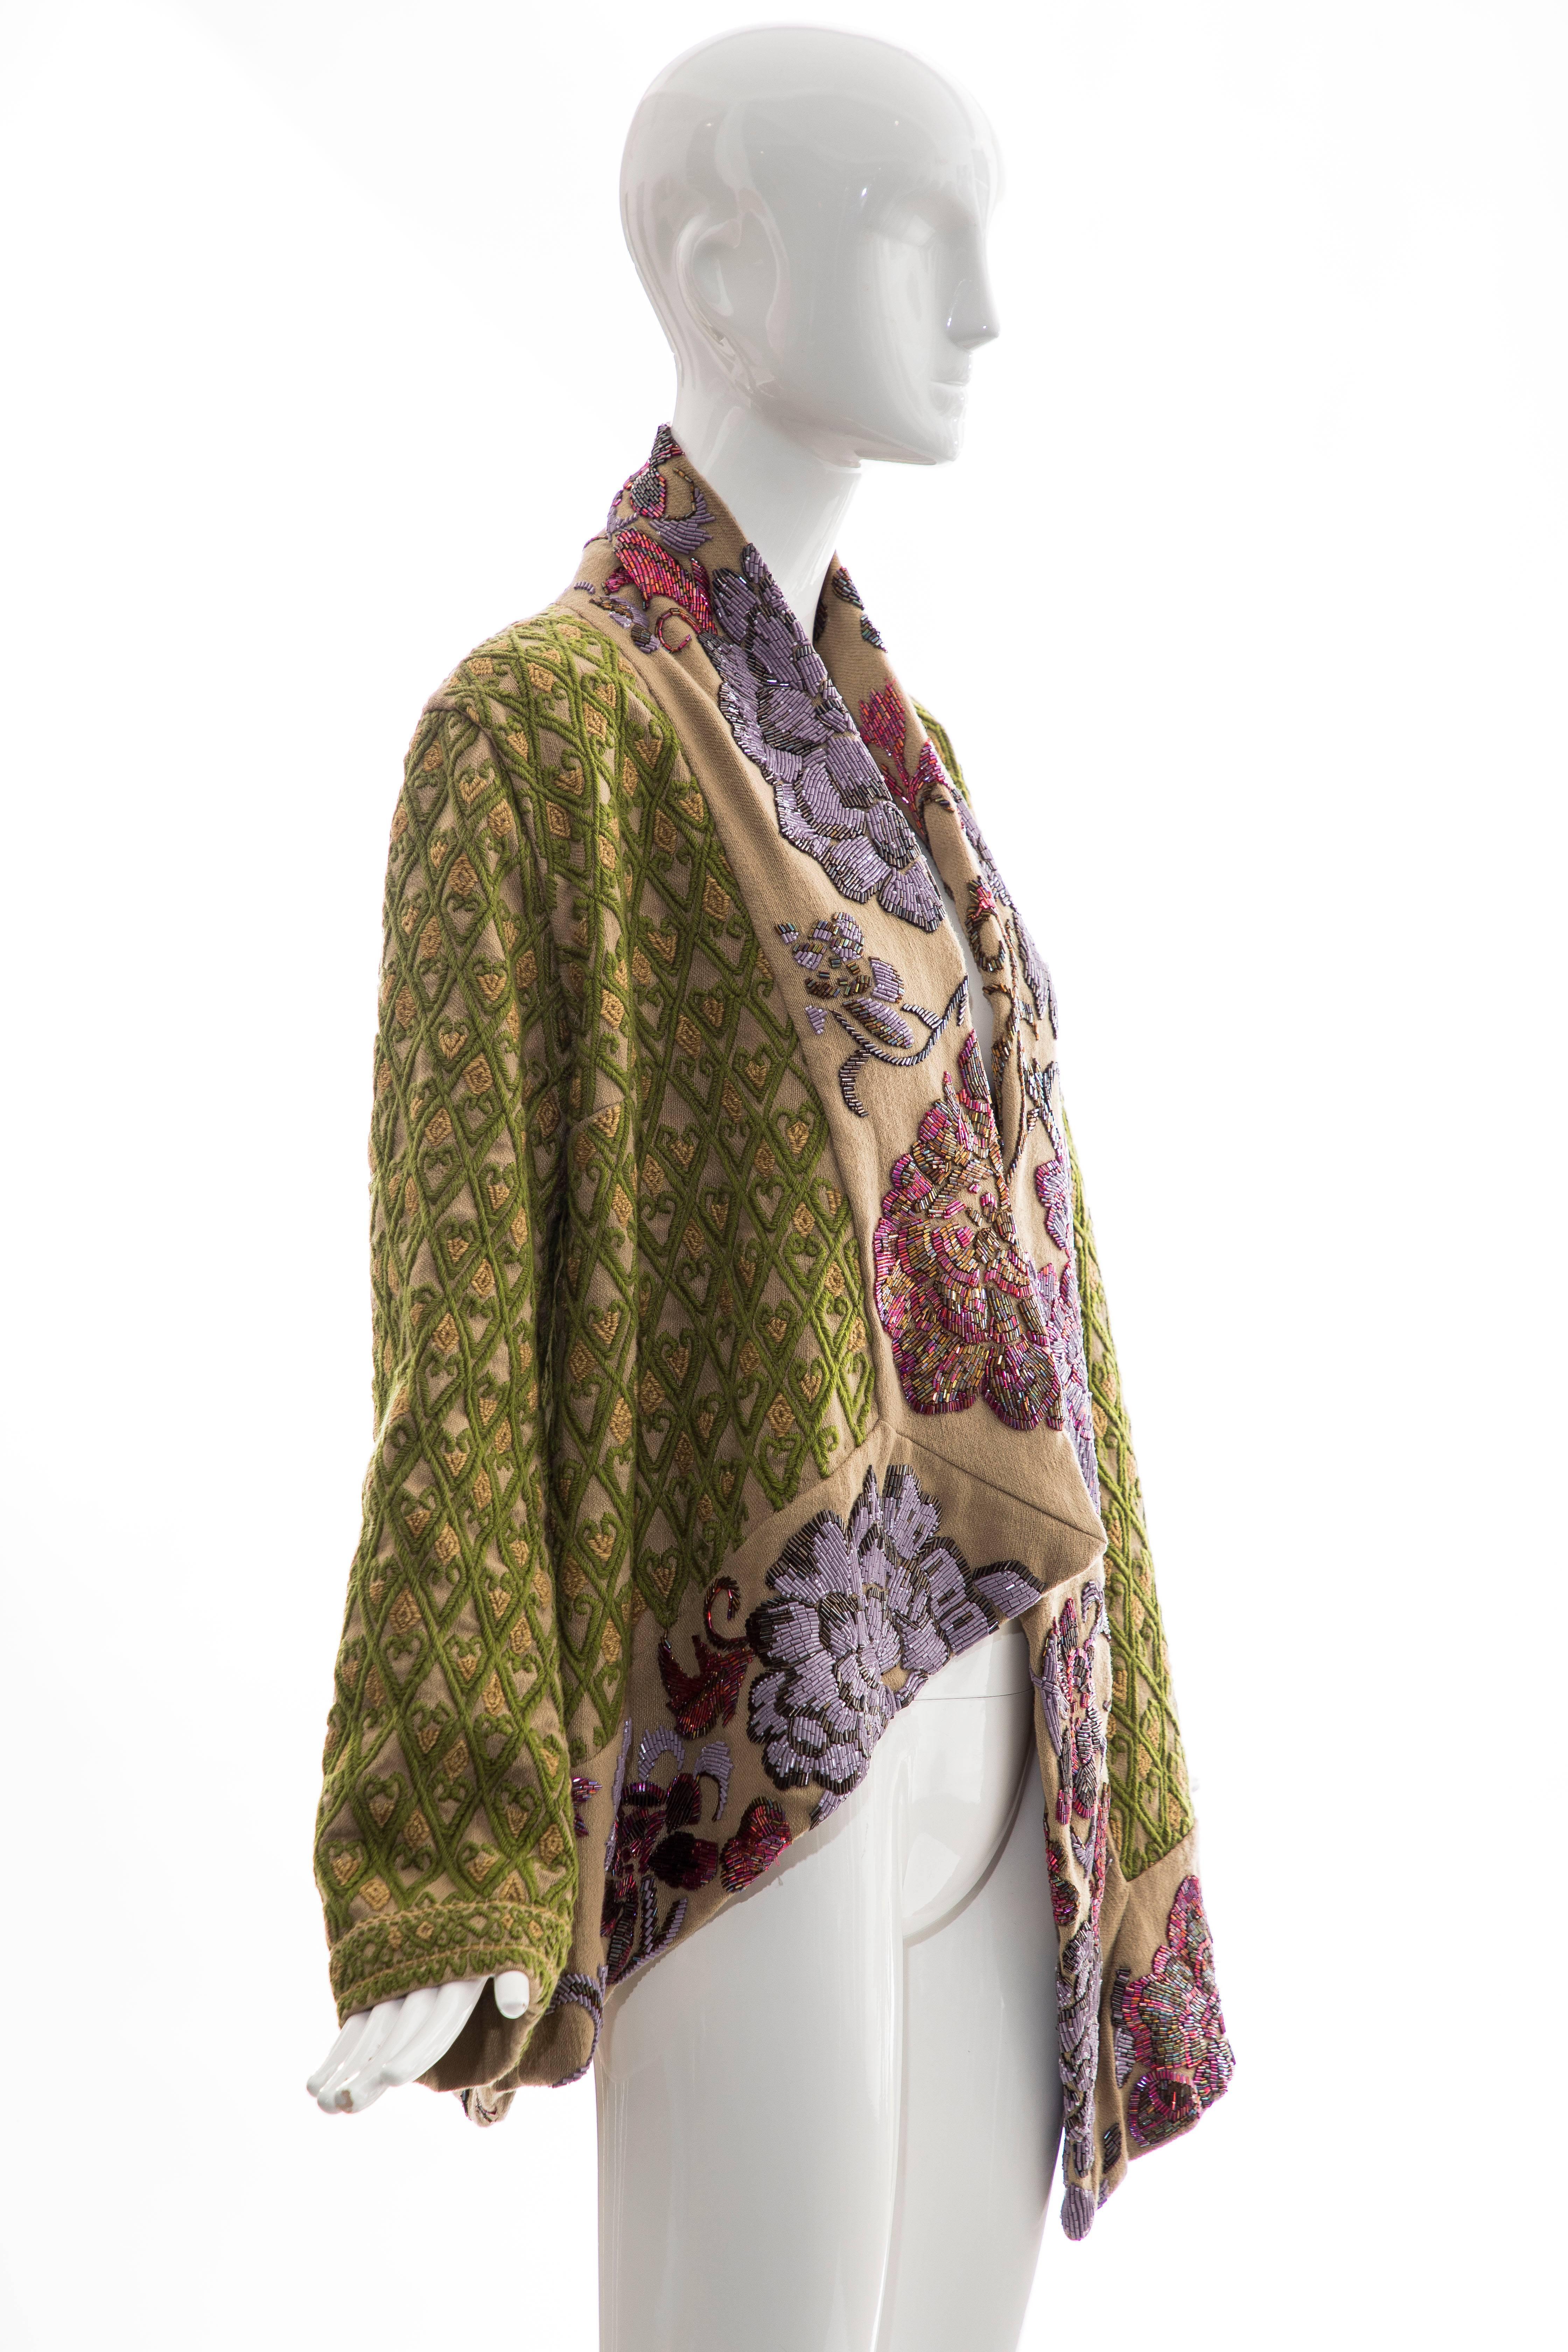 Dries Van Noten Runway Hemp Wool Floral Embroidered Beaded Jacket, Fall 2003 6